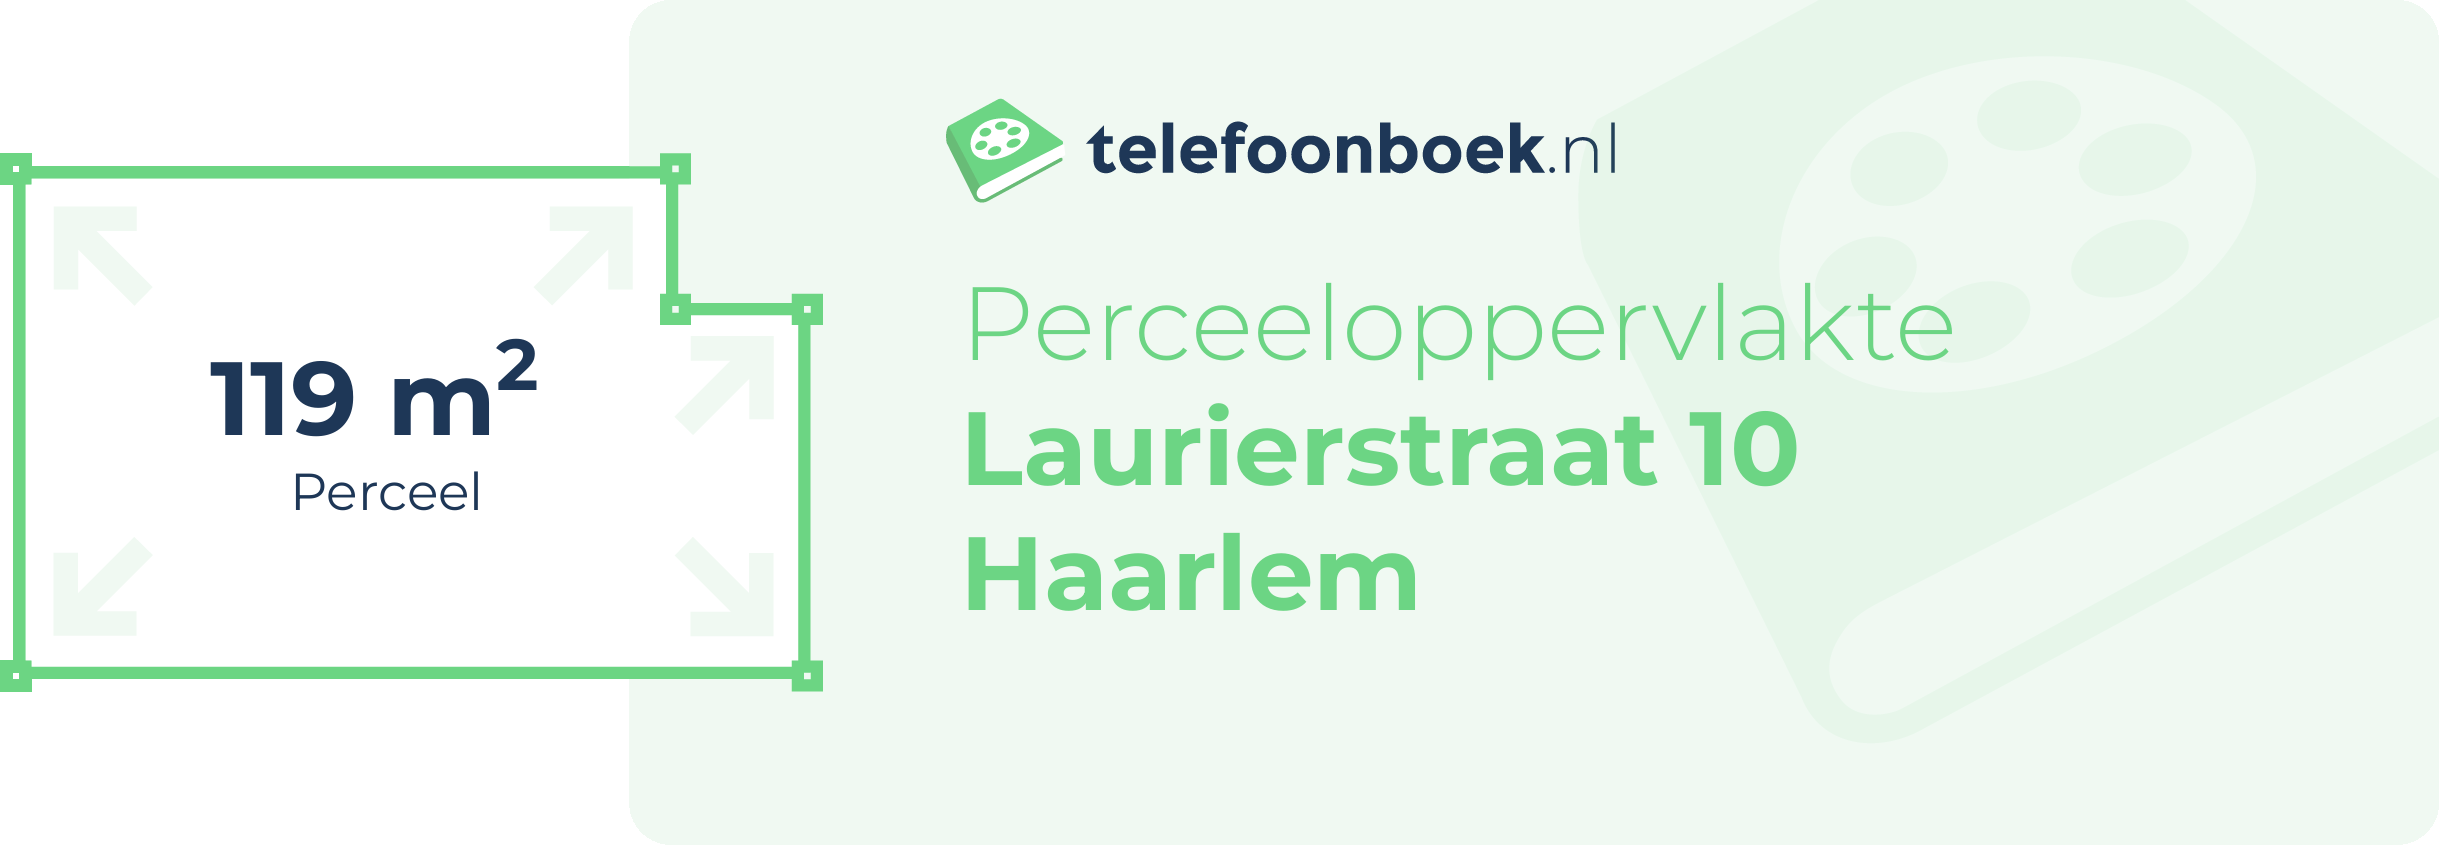 Perceeloppervlakte Laurierstraat 10 Haarlem